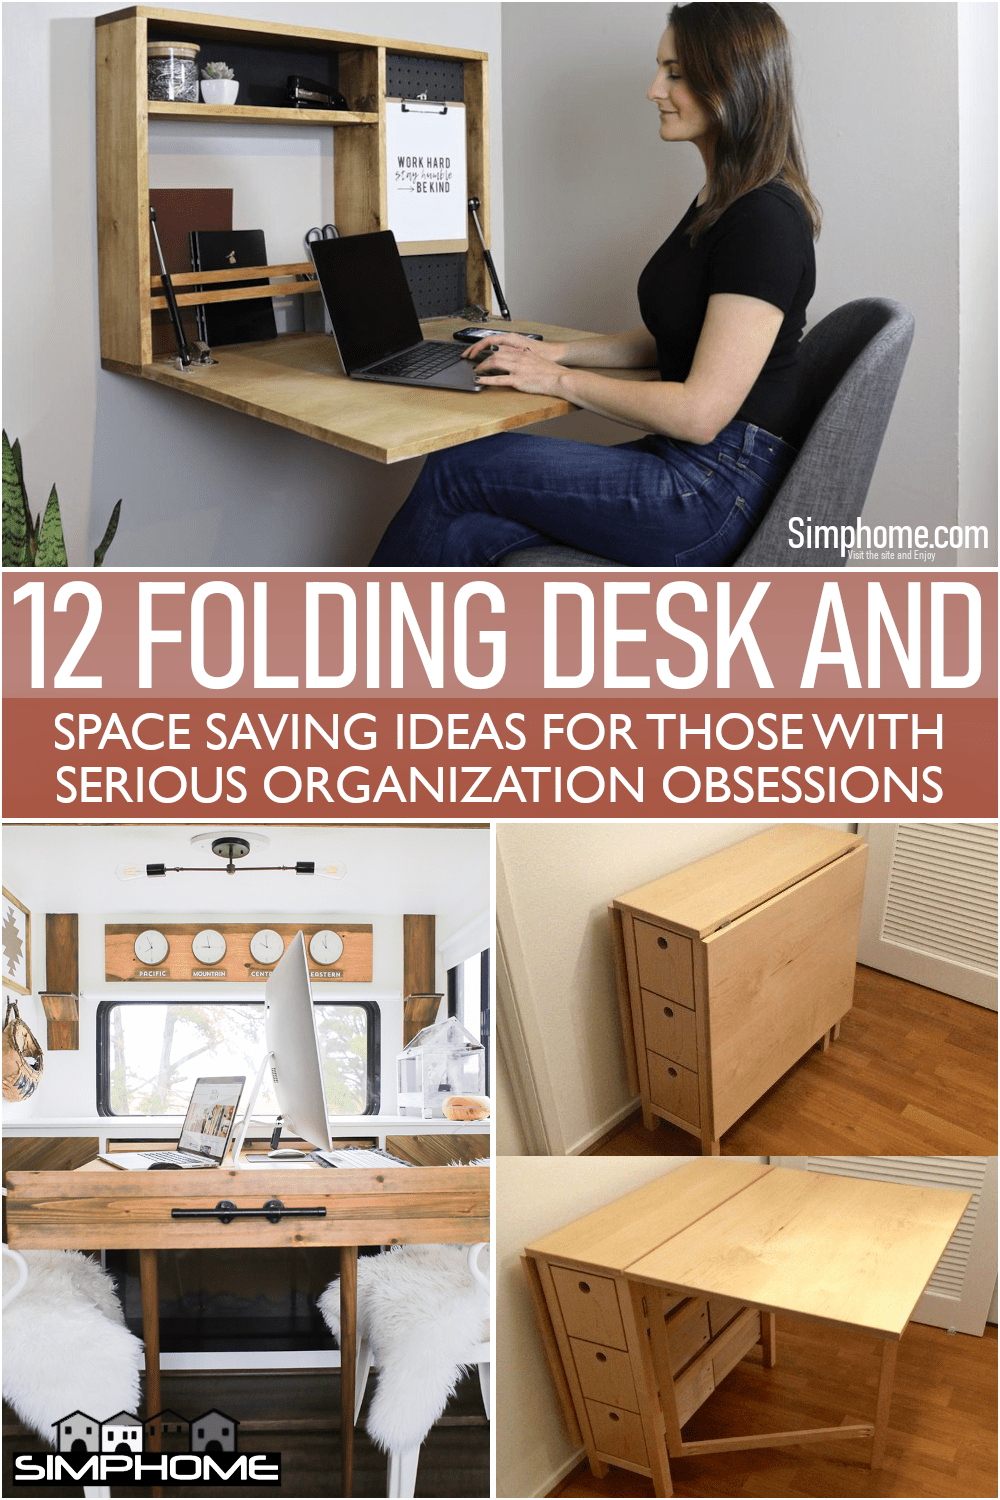 12 Folding Desk and Space Saving Ideas Via Simphome.com